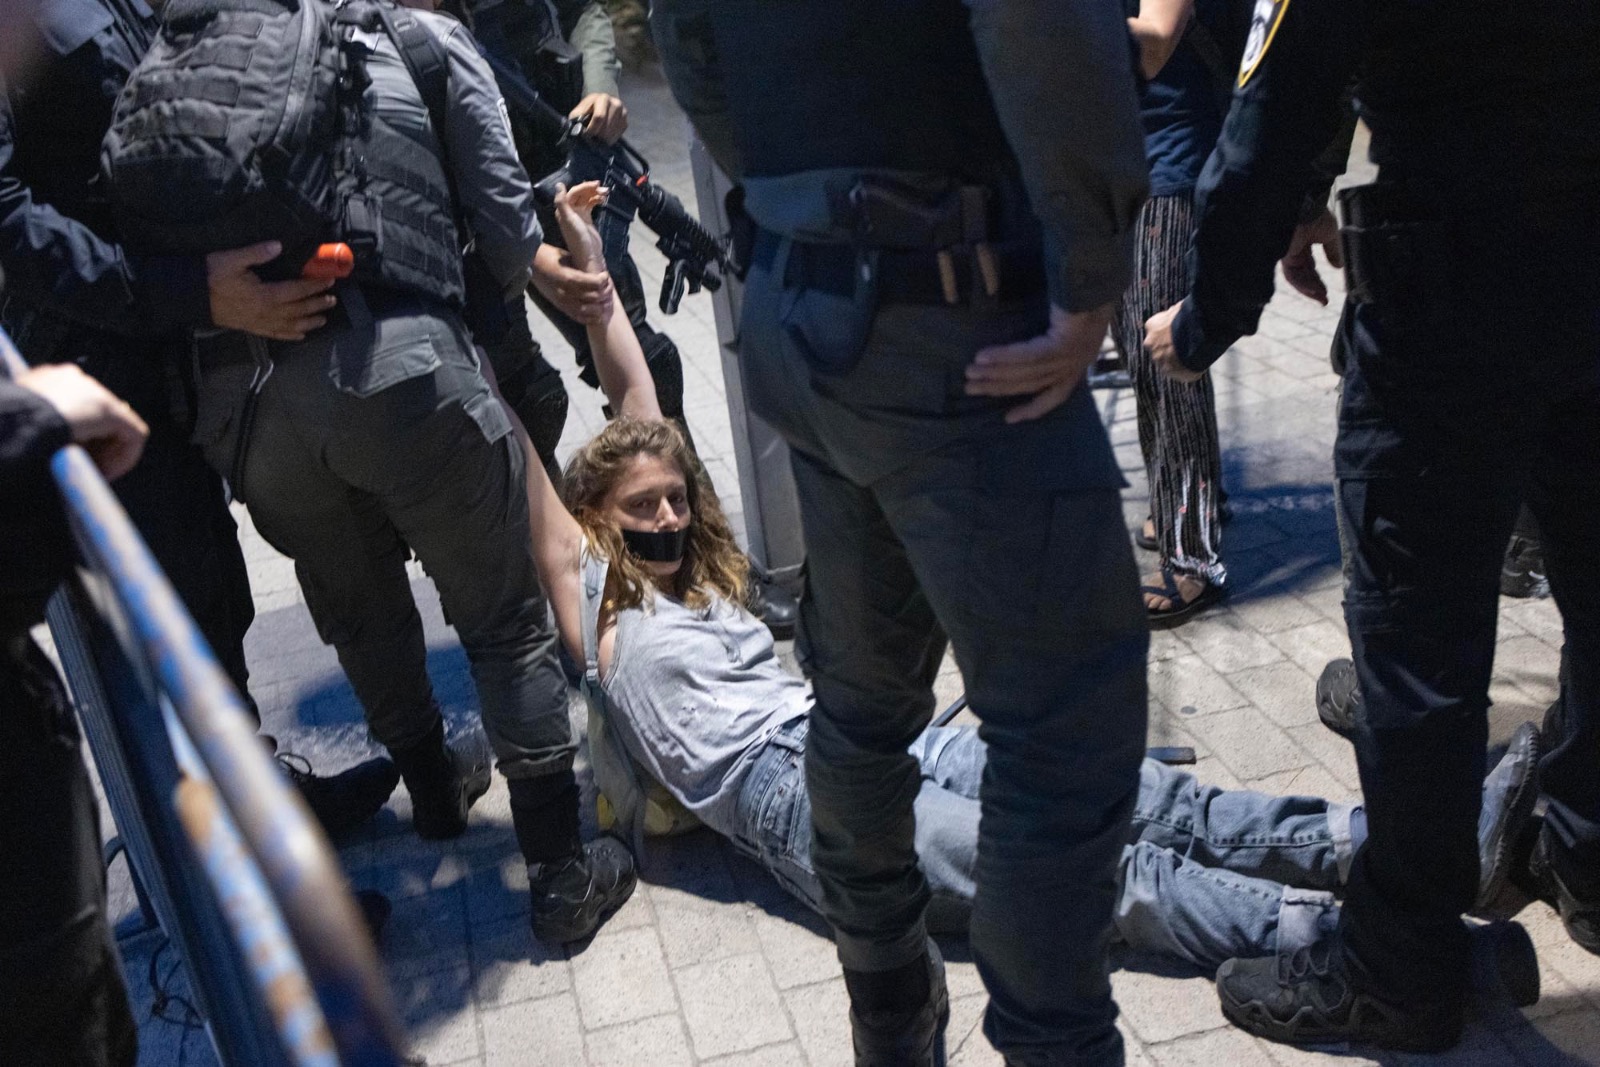 השוטרים התחילו להפעיל אלימות ללא שום התגרות. מפגינה נגררת על הרצפה מול תחנת משטרה ברחוב סלמה בתל אביב (צילום: אורן זיו)